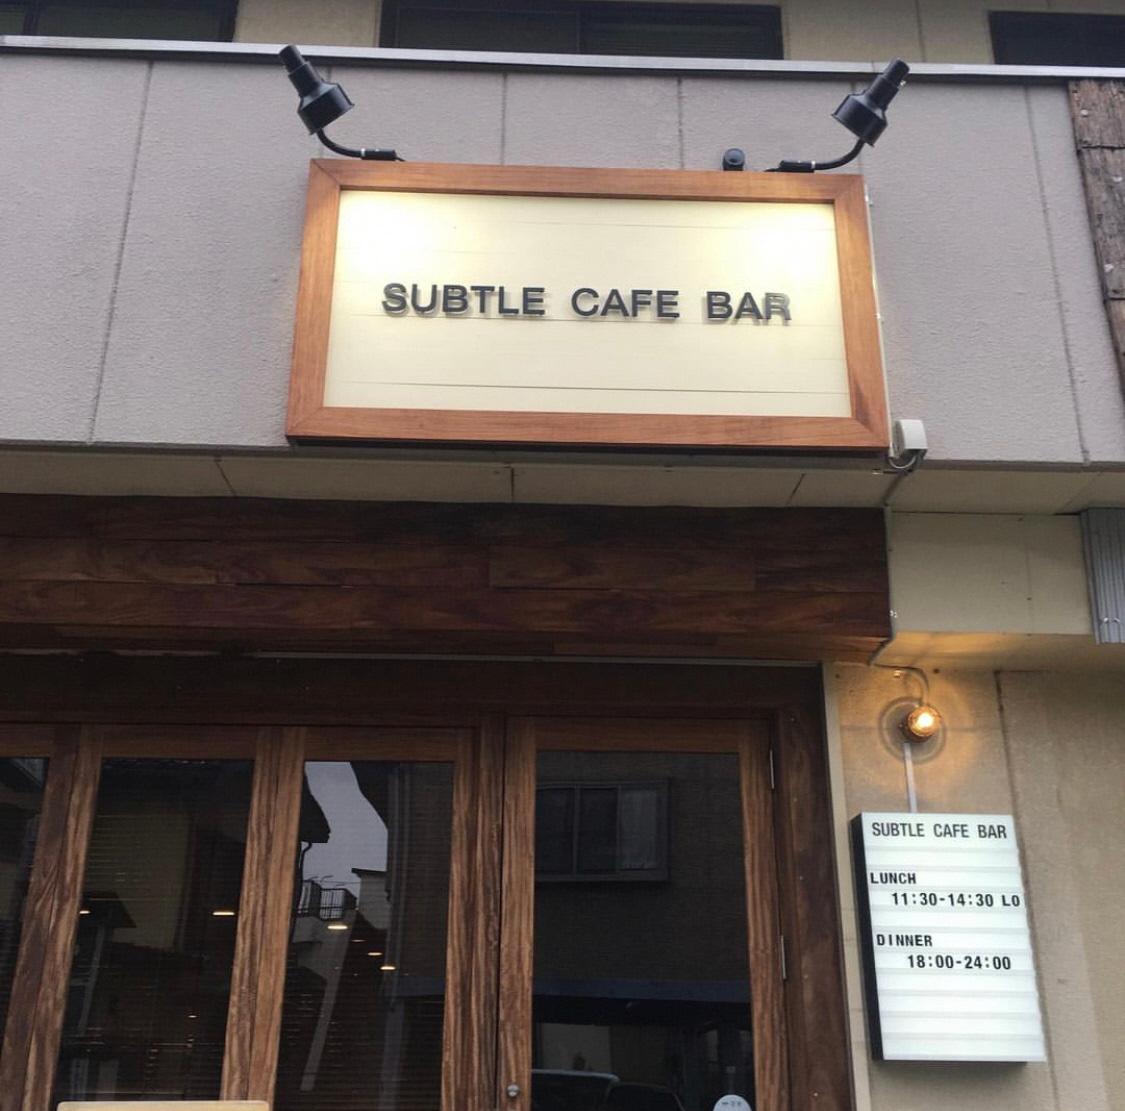 建物に設置された「subtle cafe bar サトルカフェバー」の看板にライトが照らされているサトルカフェバーの外観写真